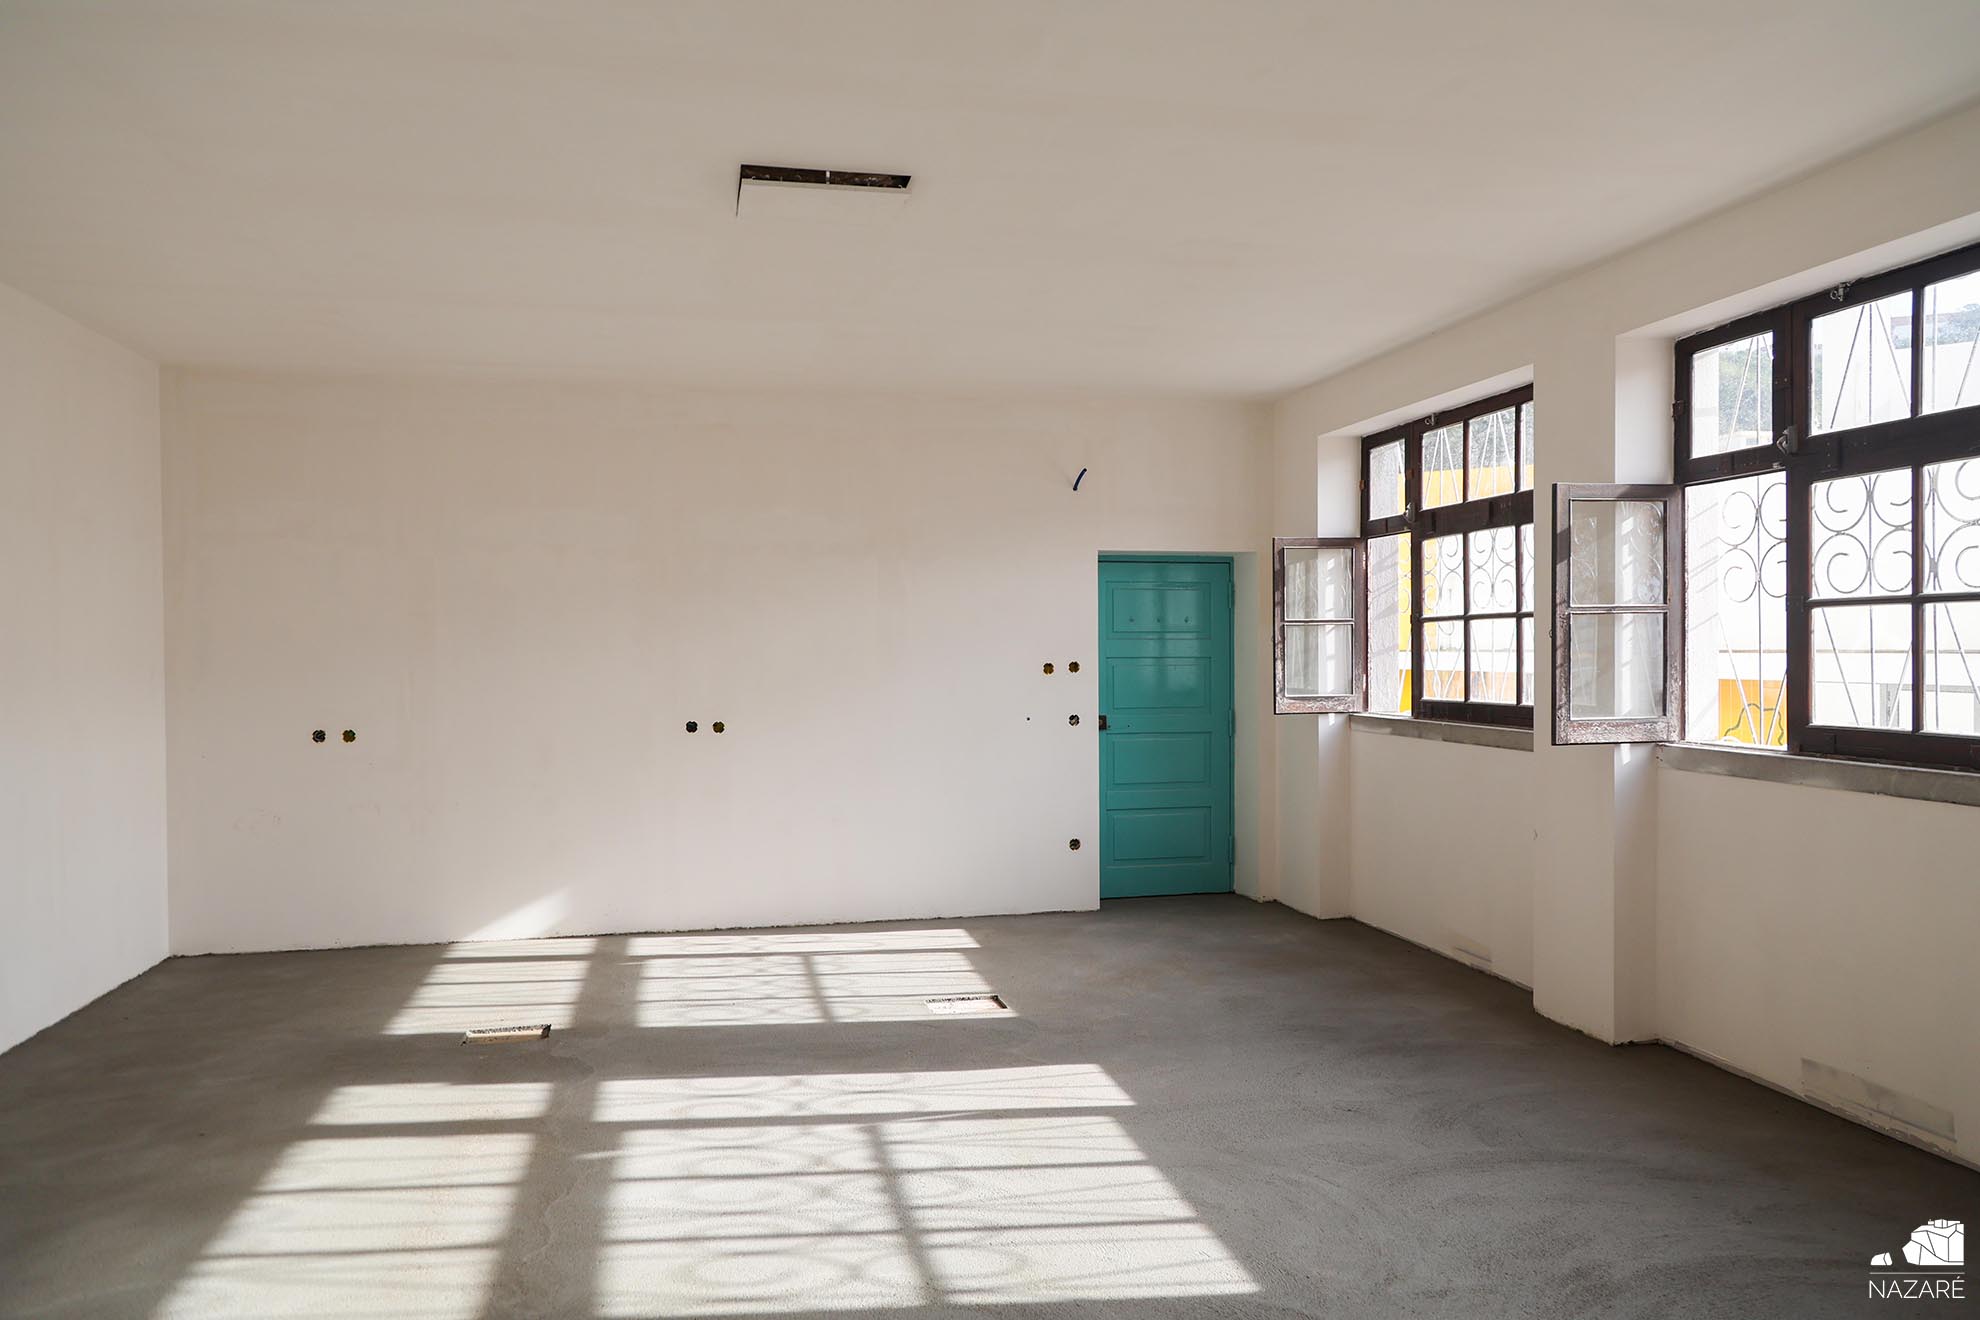 Novas instalações da Ação Social da Câmara da Nazaré nascem na antiga escola primária